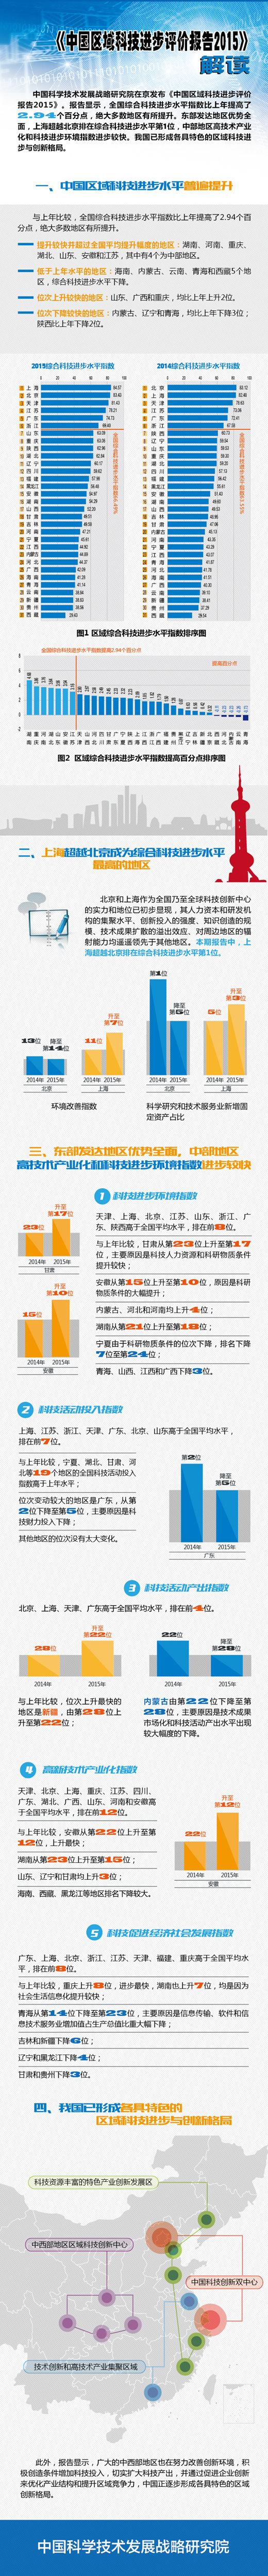 《中国区域科技进步评价报告2015》发布